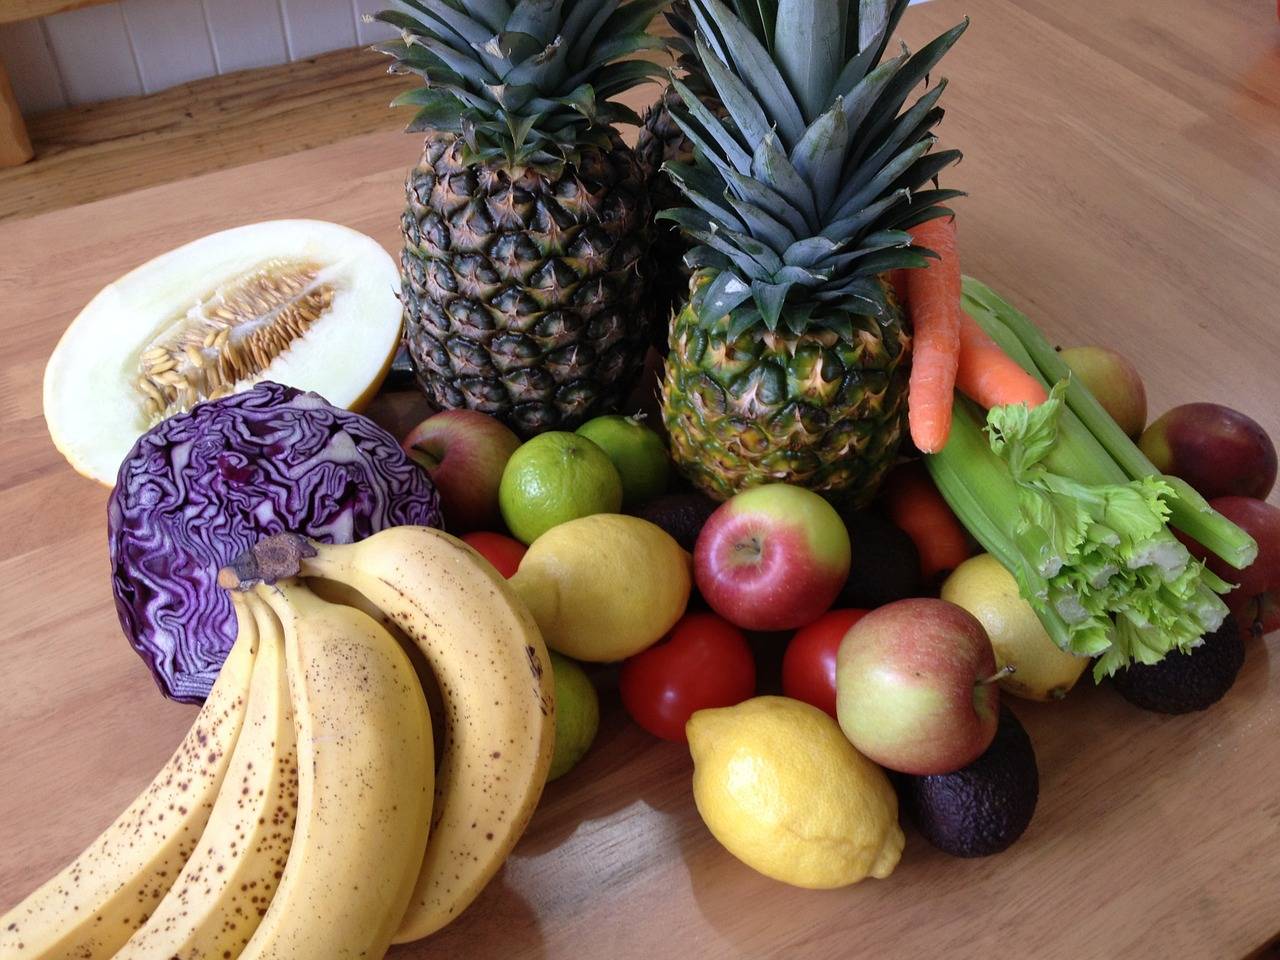 Топ-10 самых полезных фруктов для здоровья человека и их полезные свойства